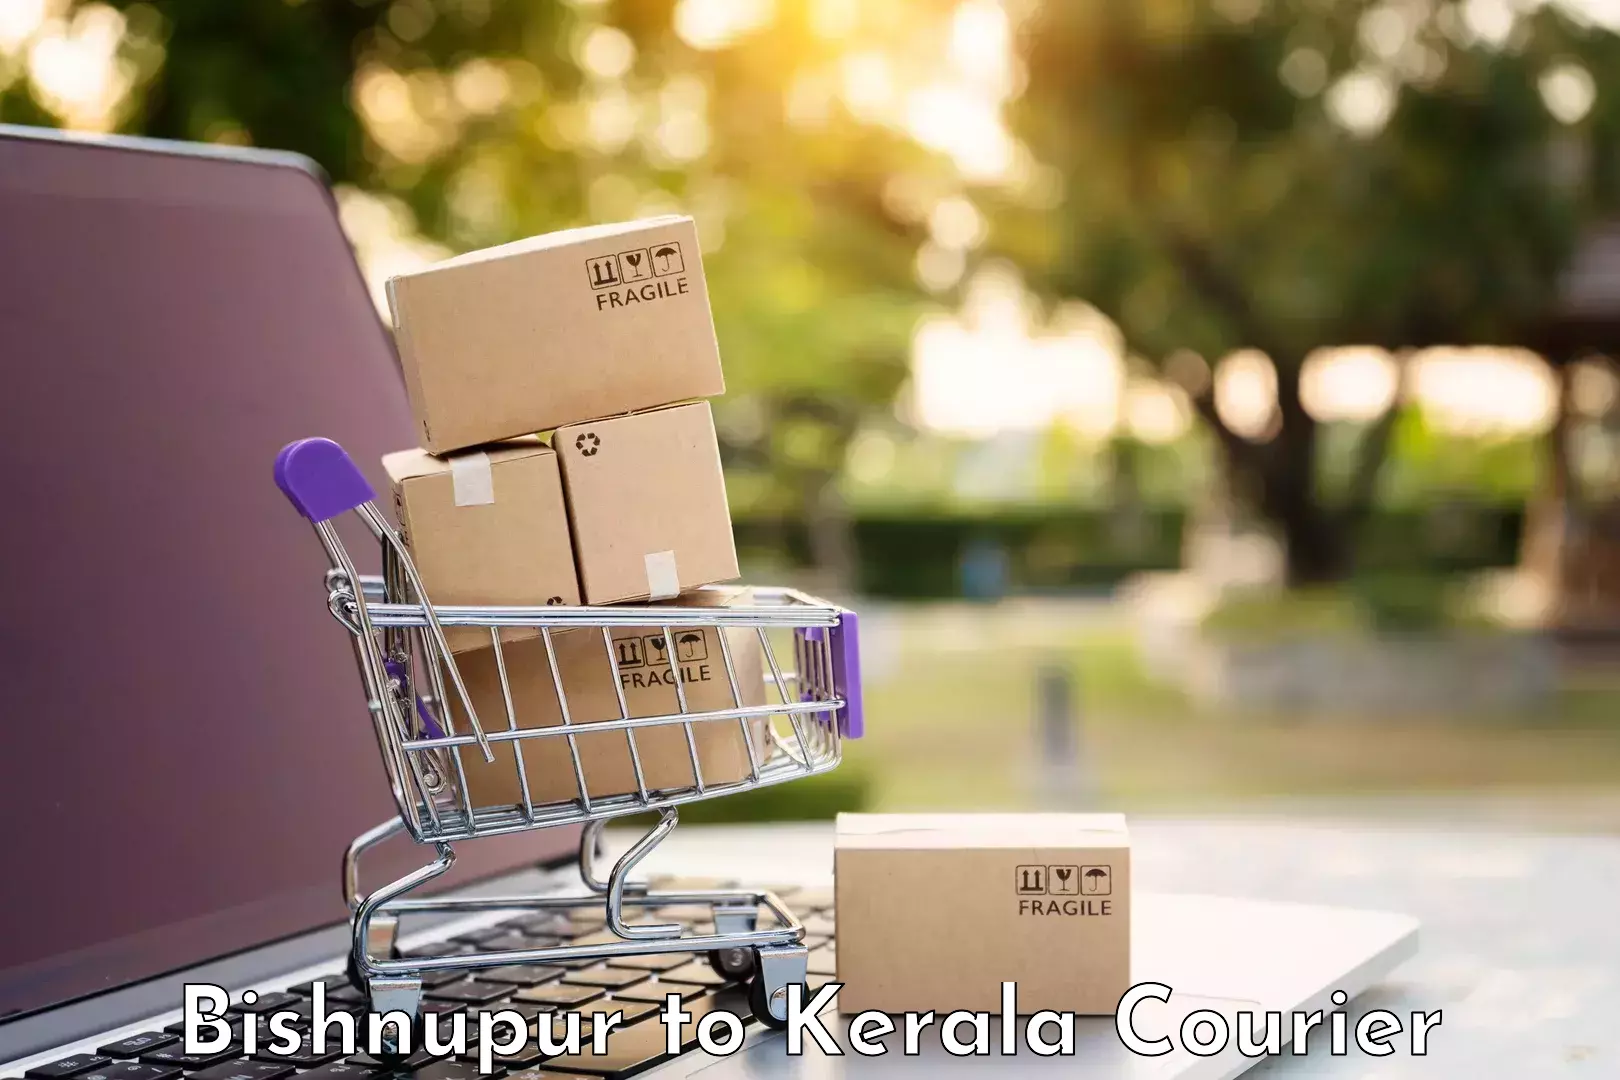 Baggage transport calculator Bishnupur to Kerala